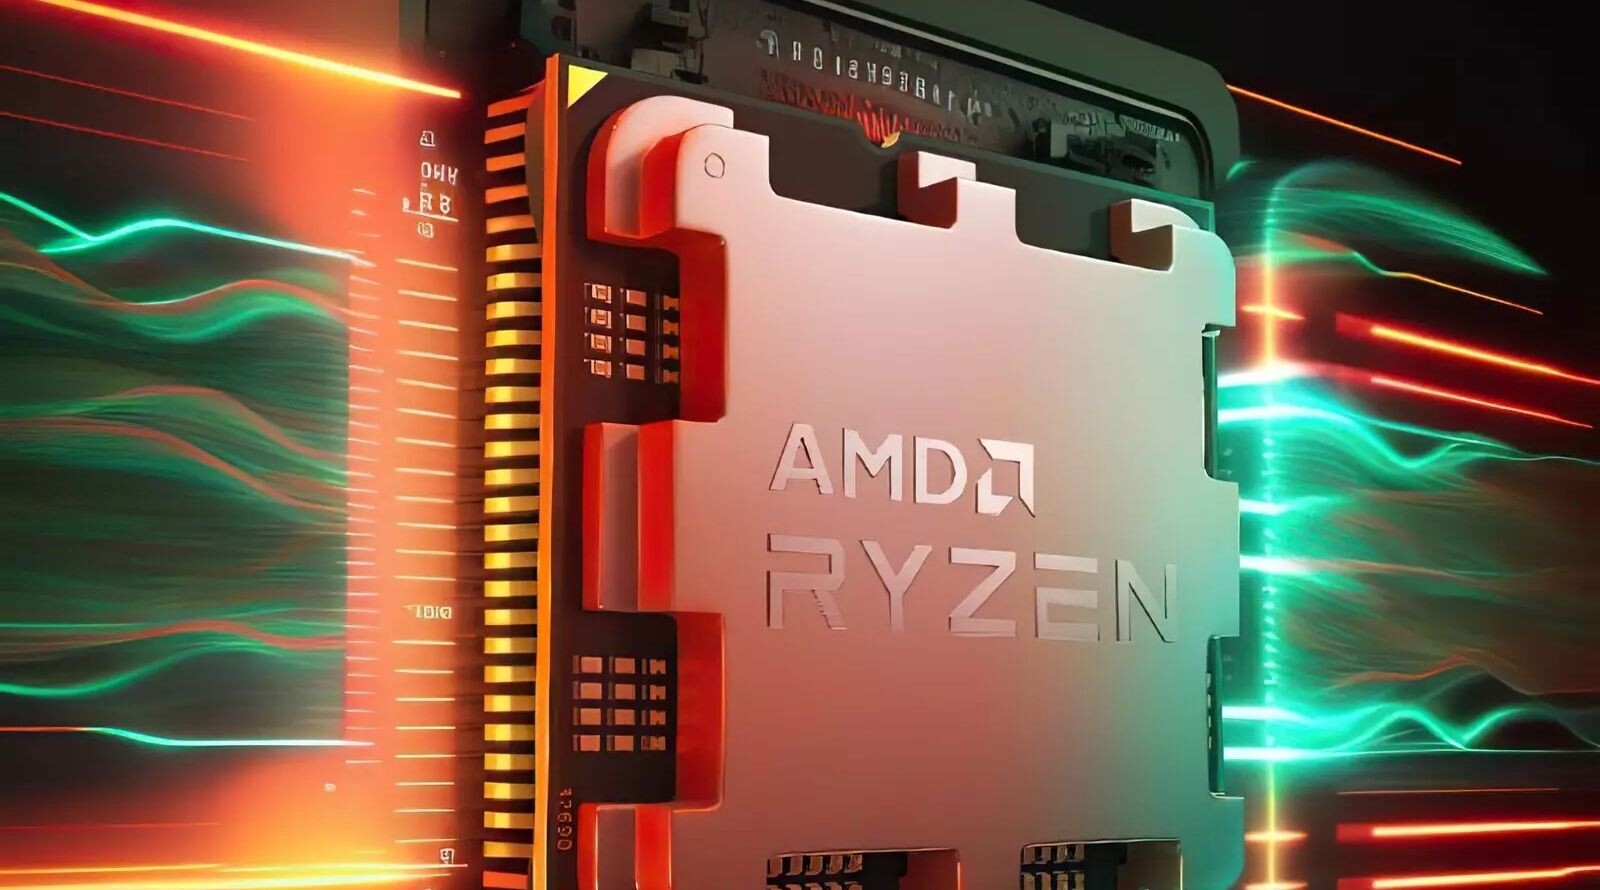 Hatalmas pofonba szaladt bele az AMD